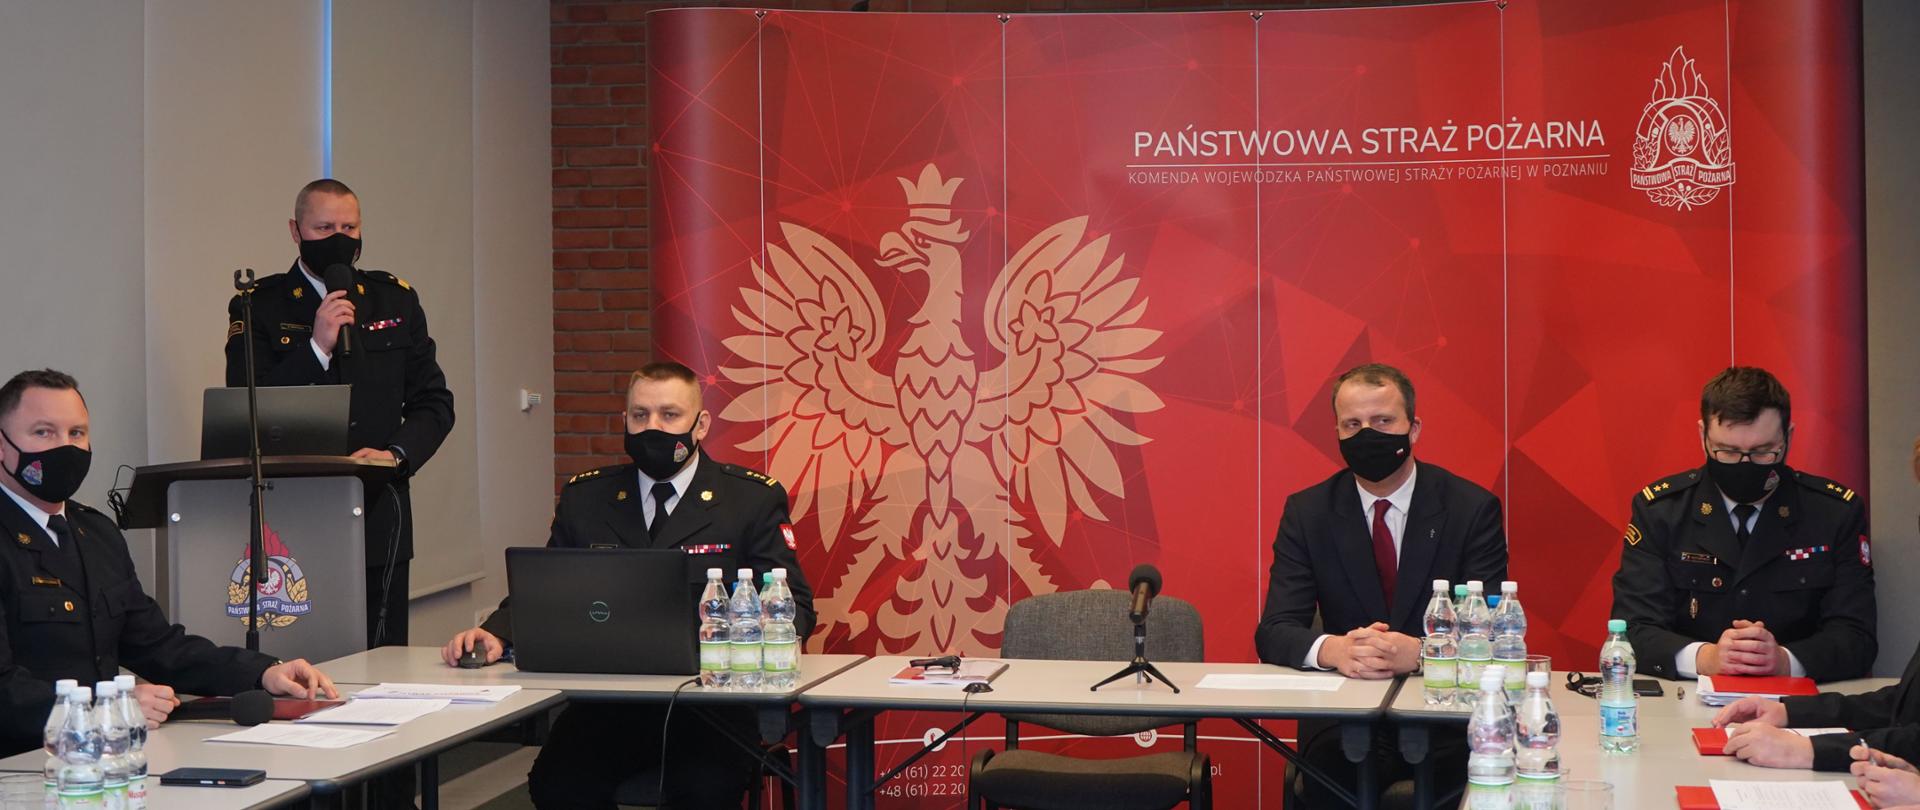 nadbrg. Dariusz Matczak otwierający naradę, za stołem prezydialnym siedzą Wojewoda Wielkopolski oraz dwaj zastępcy komendanta wojewódzkiego PSP